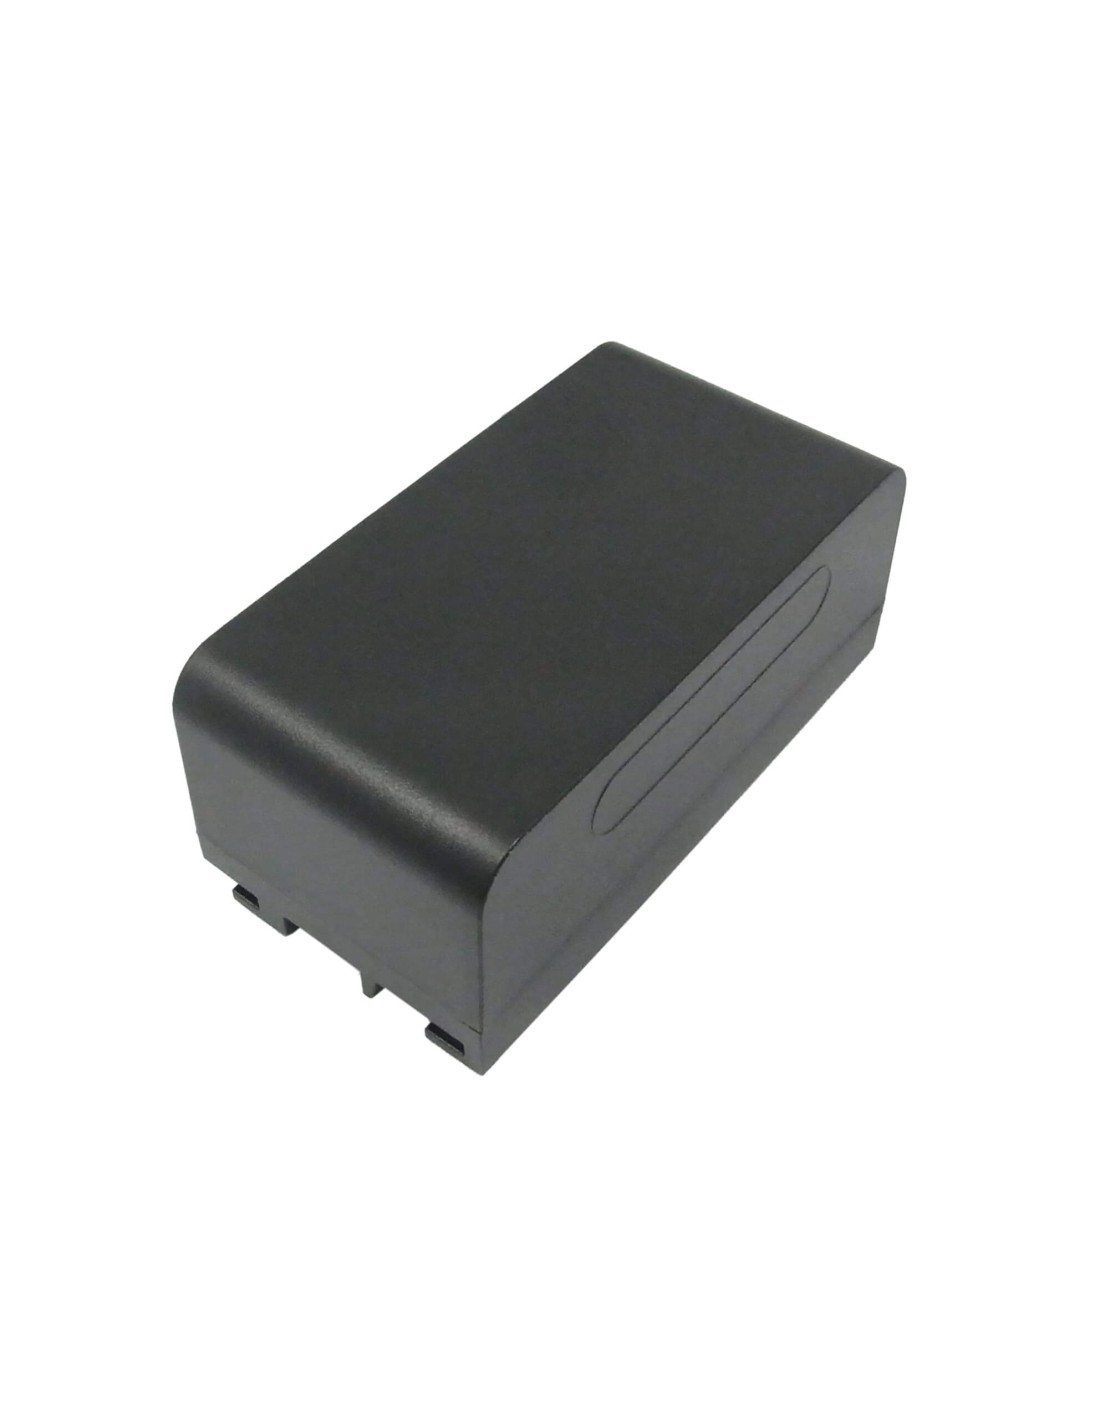 Battery for Leica Tps400, Tps700, Tps800 6.0V, 4200mAh - 25.20Wh